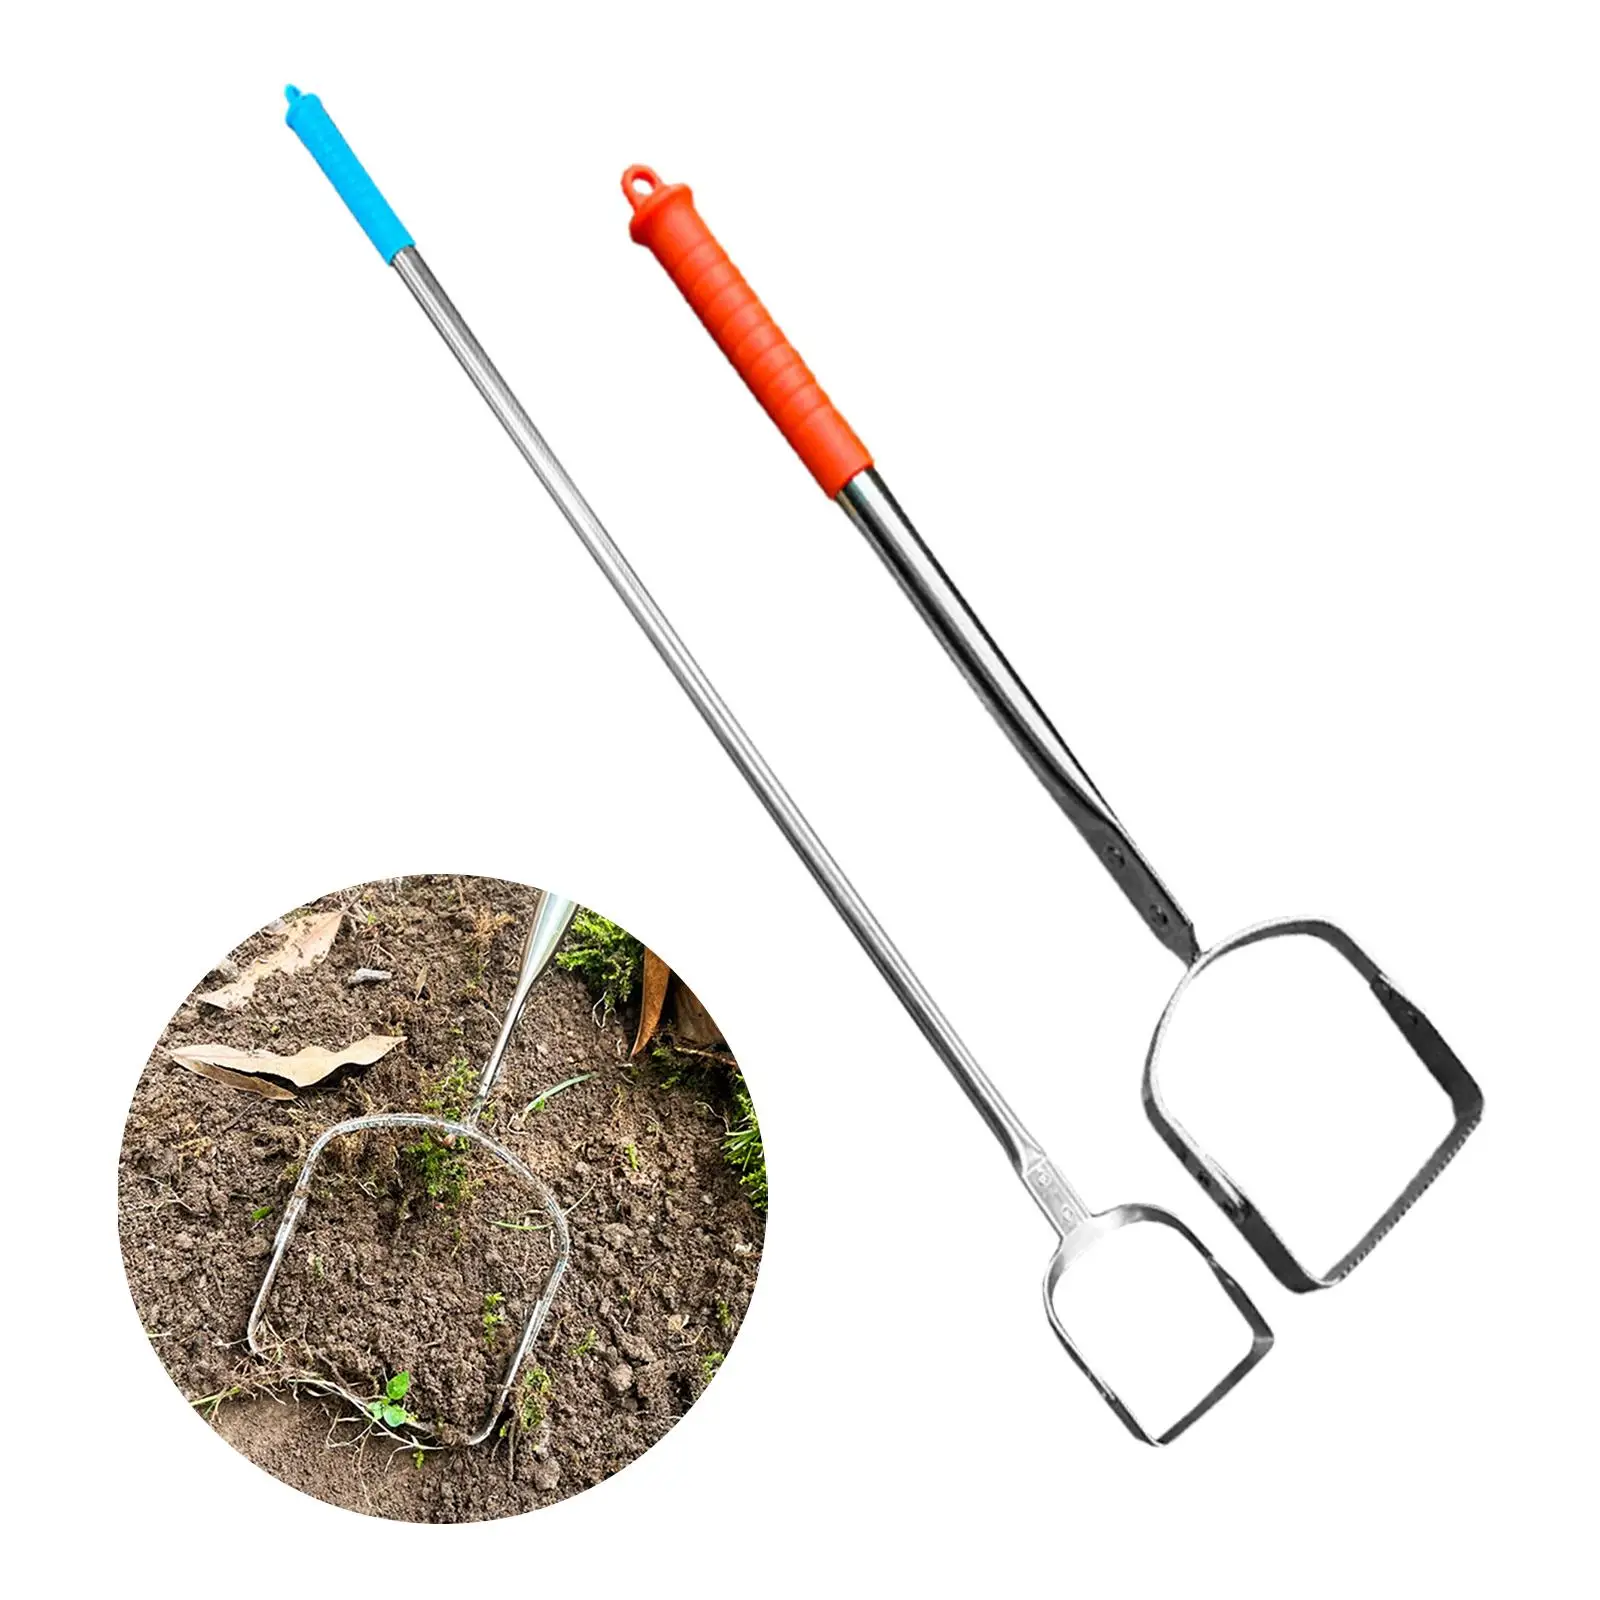 Garden Hoe Tool Durable Long Handle Handheld Loop Hoe Weeding Rake for Planting Loosening Soil Weeding Farm Vegetables